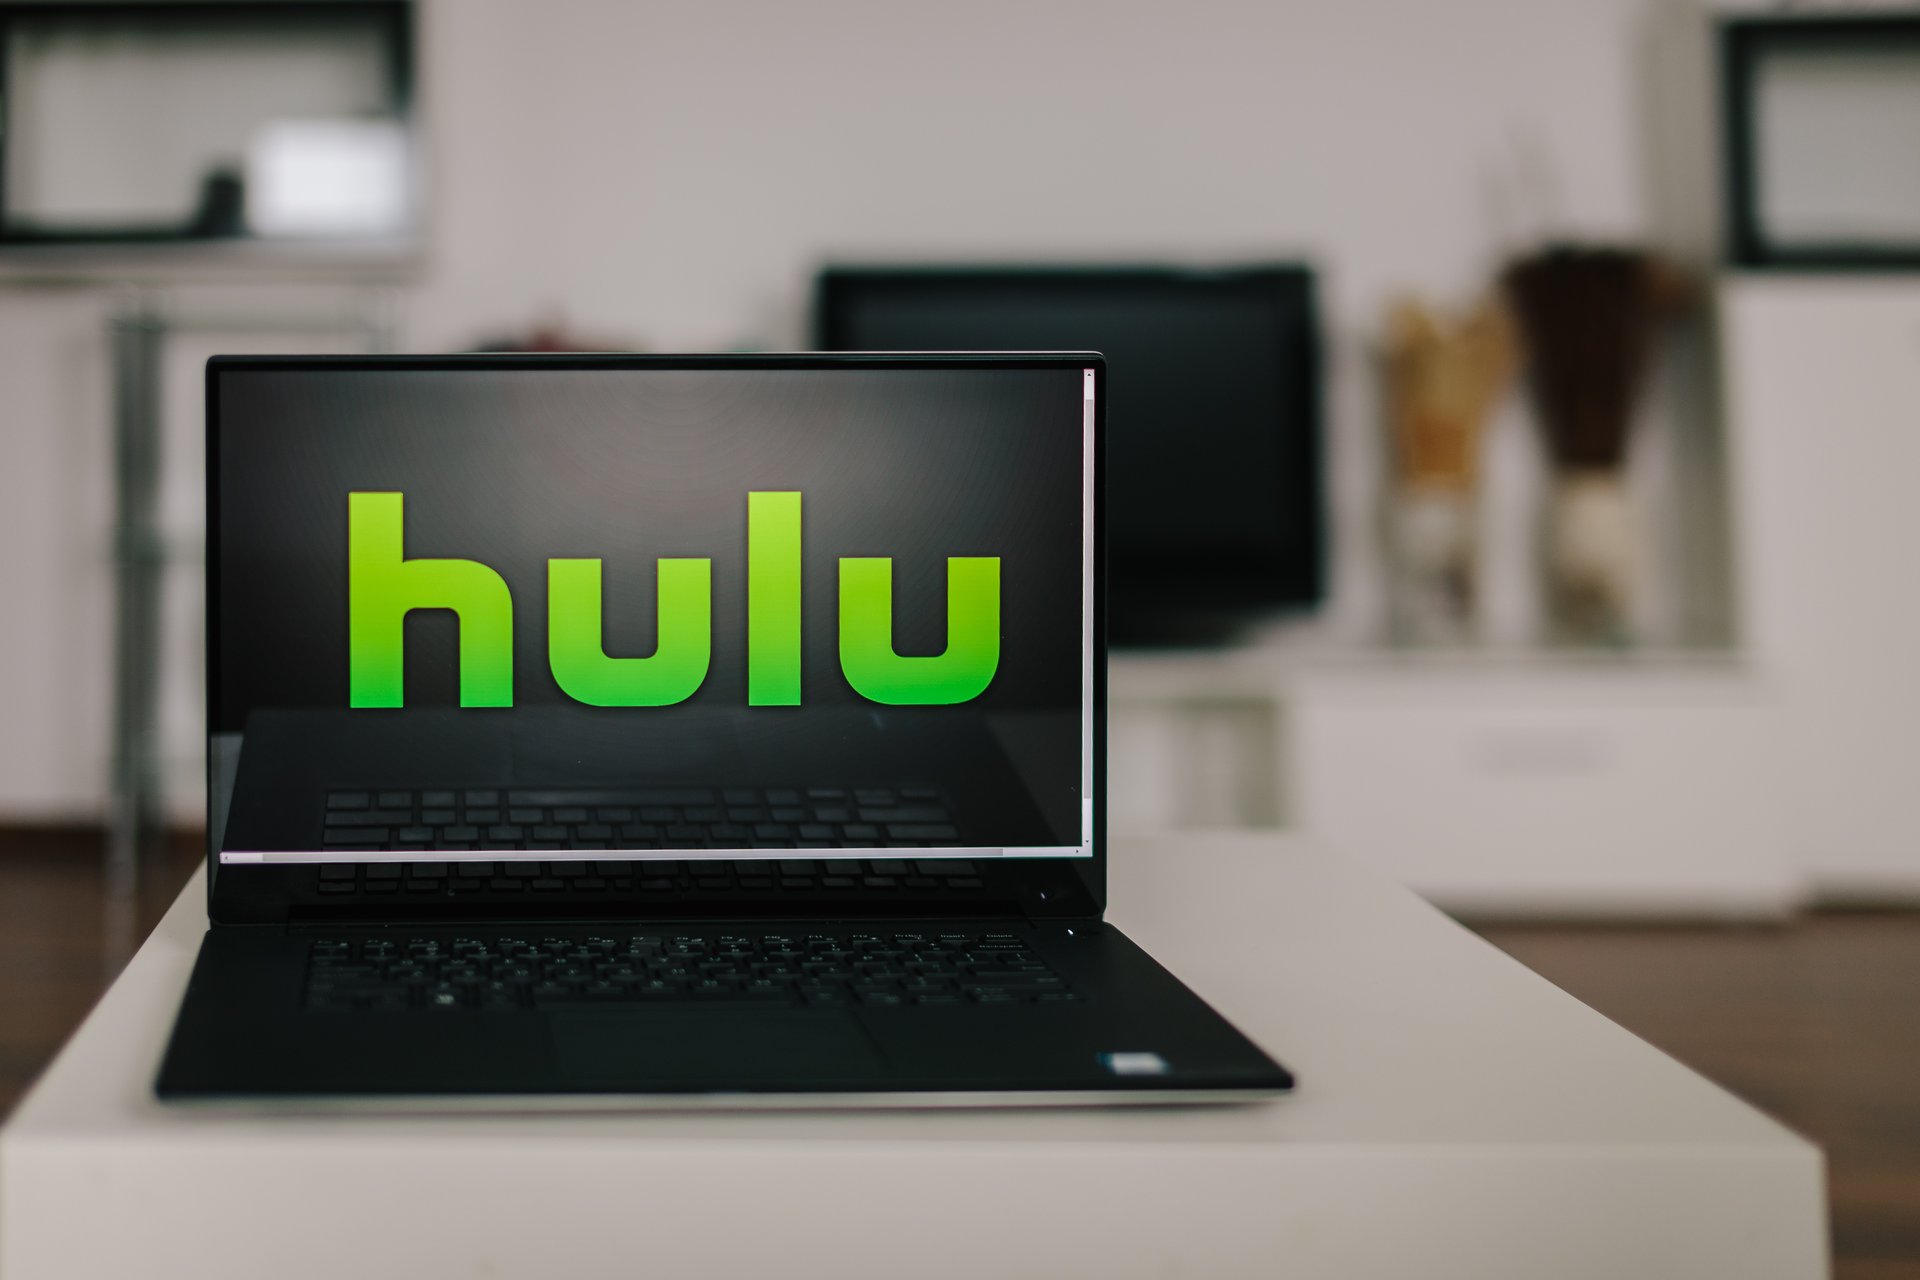 Hulu app on a laptop